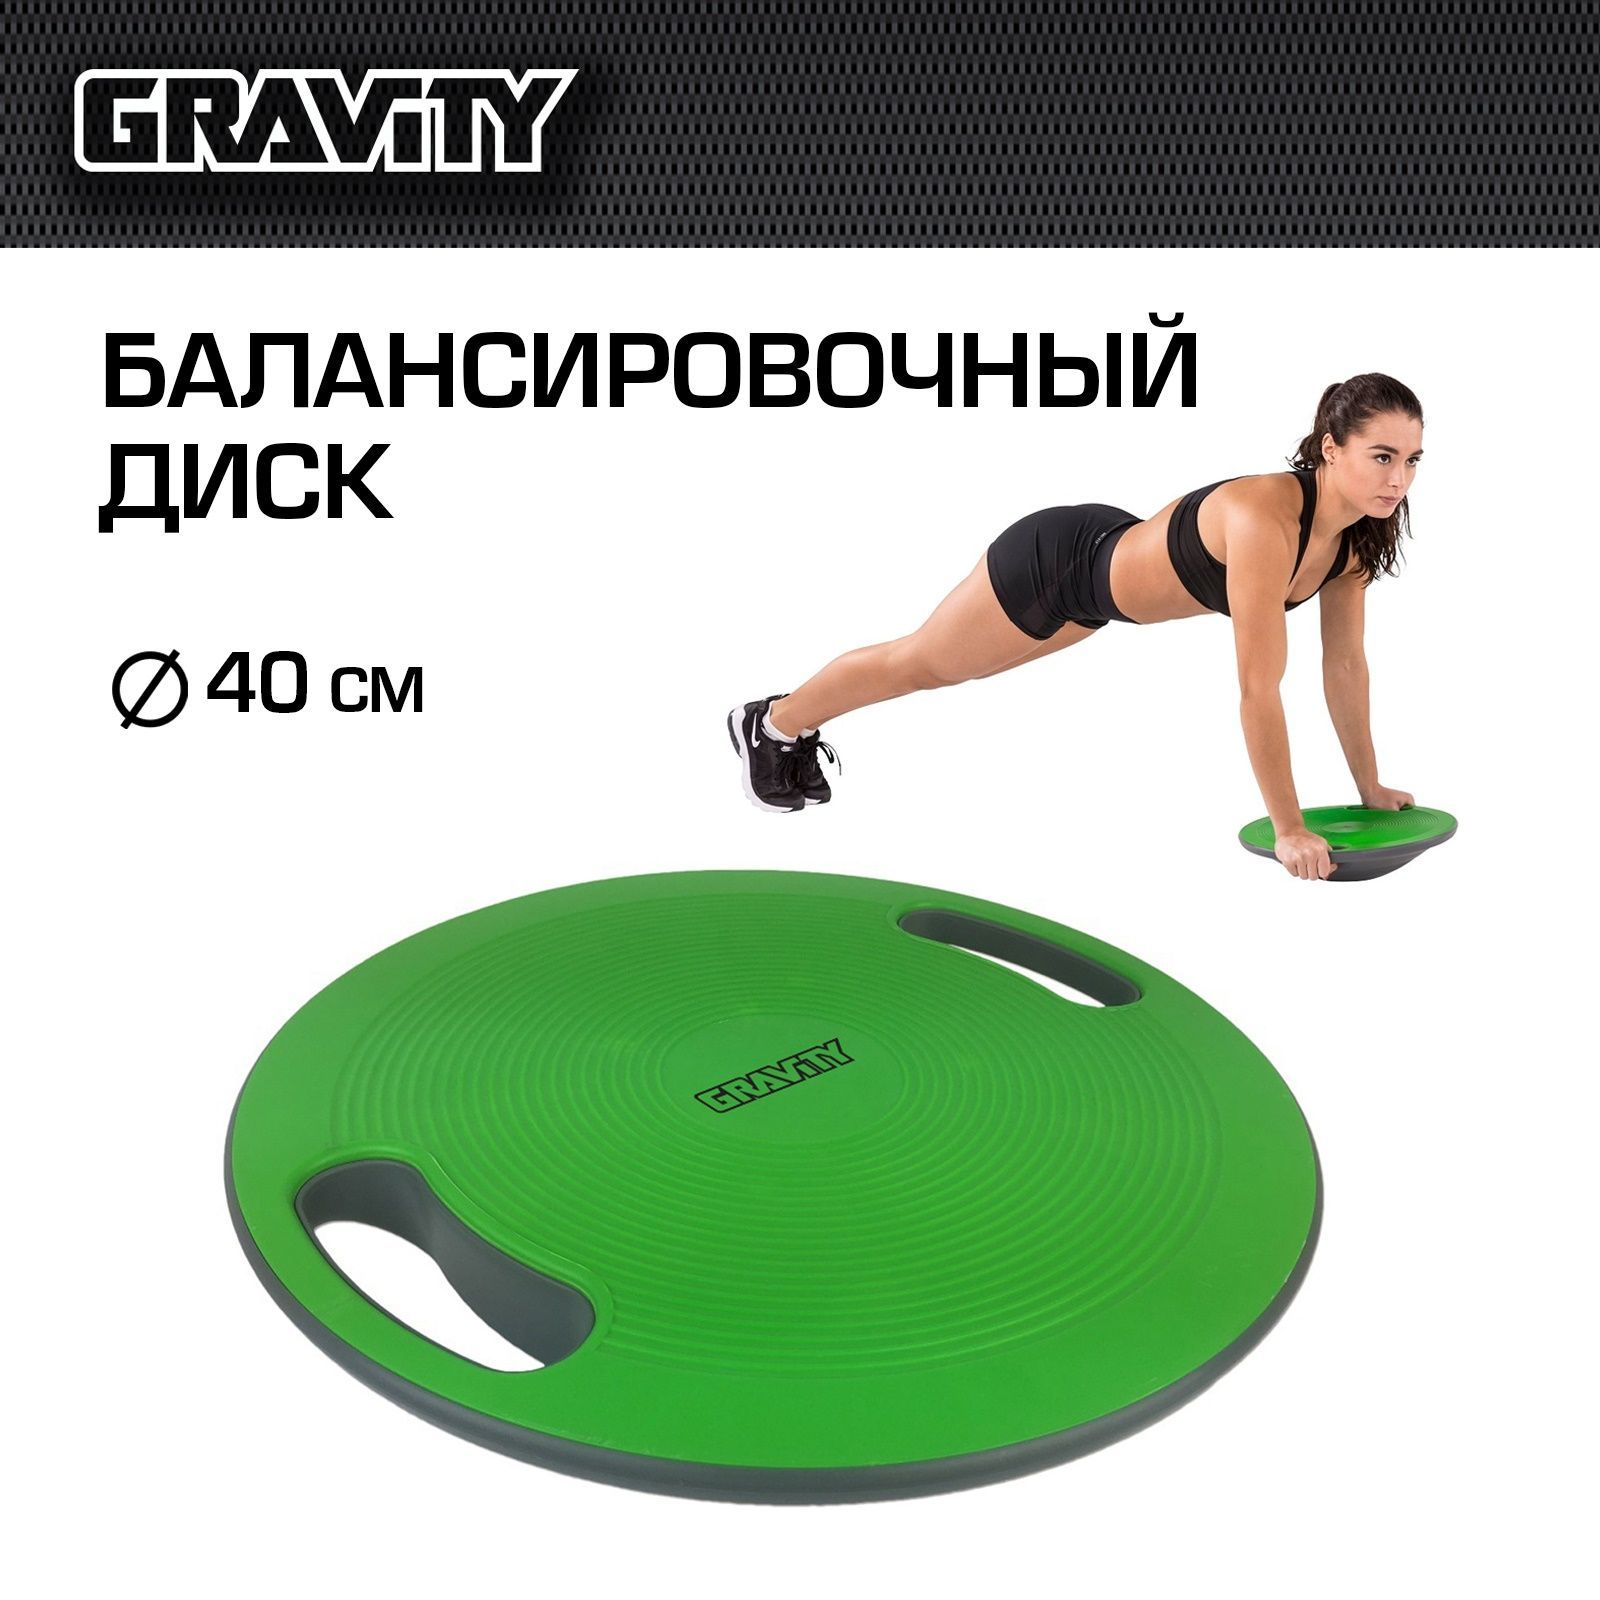 Балансировочный диск Gravity DK2020 с рукоятями, зеленый